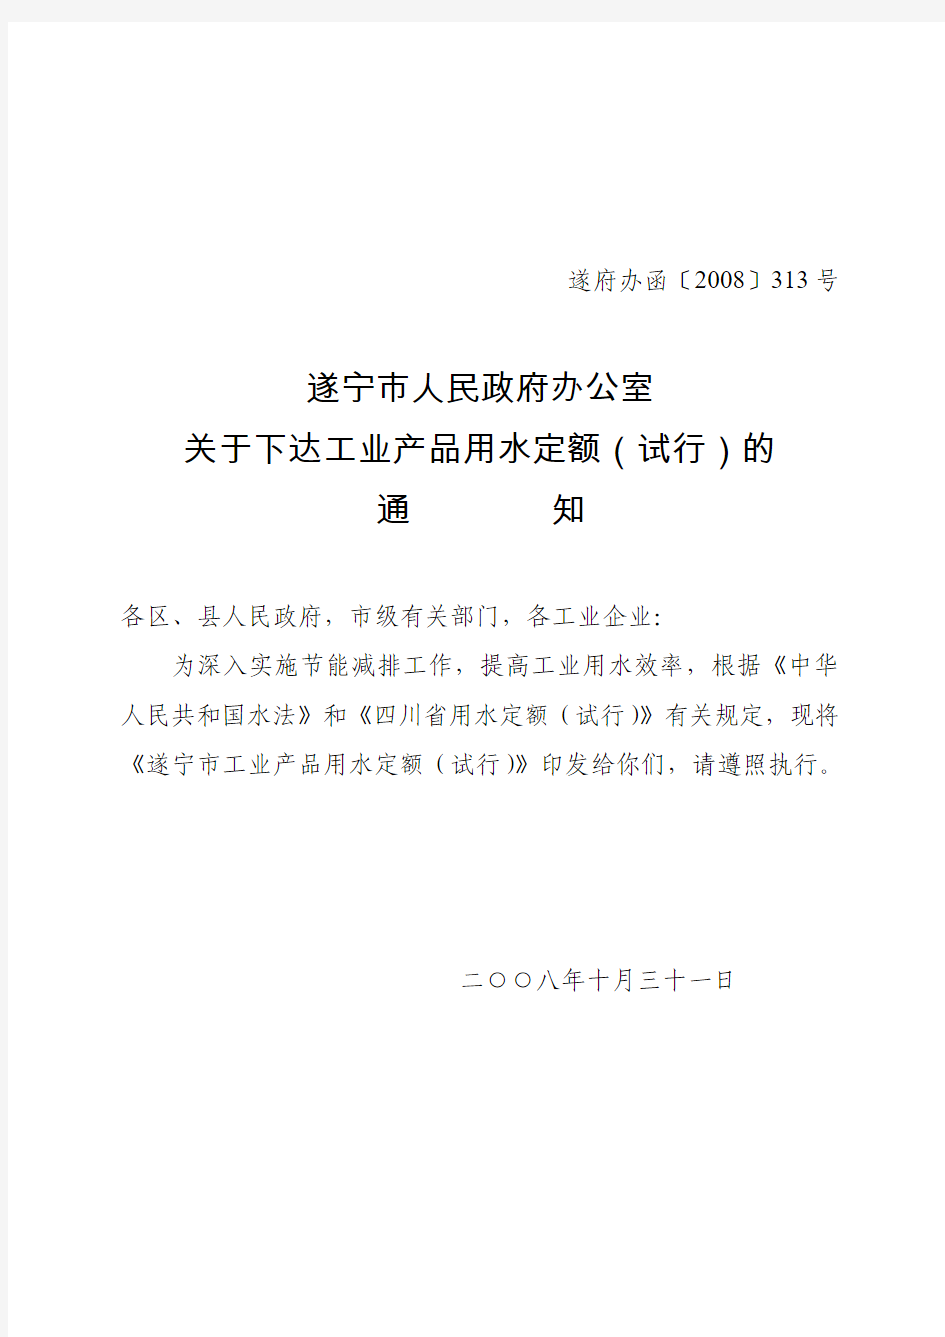 遂宁市人民政府办公室关于下达工业产品用水定额(试行)的通知